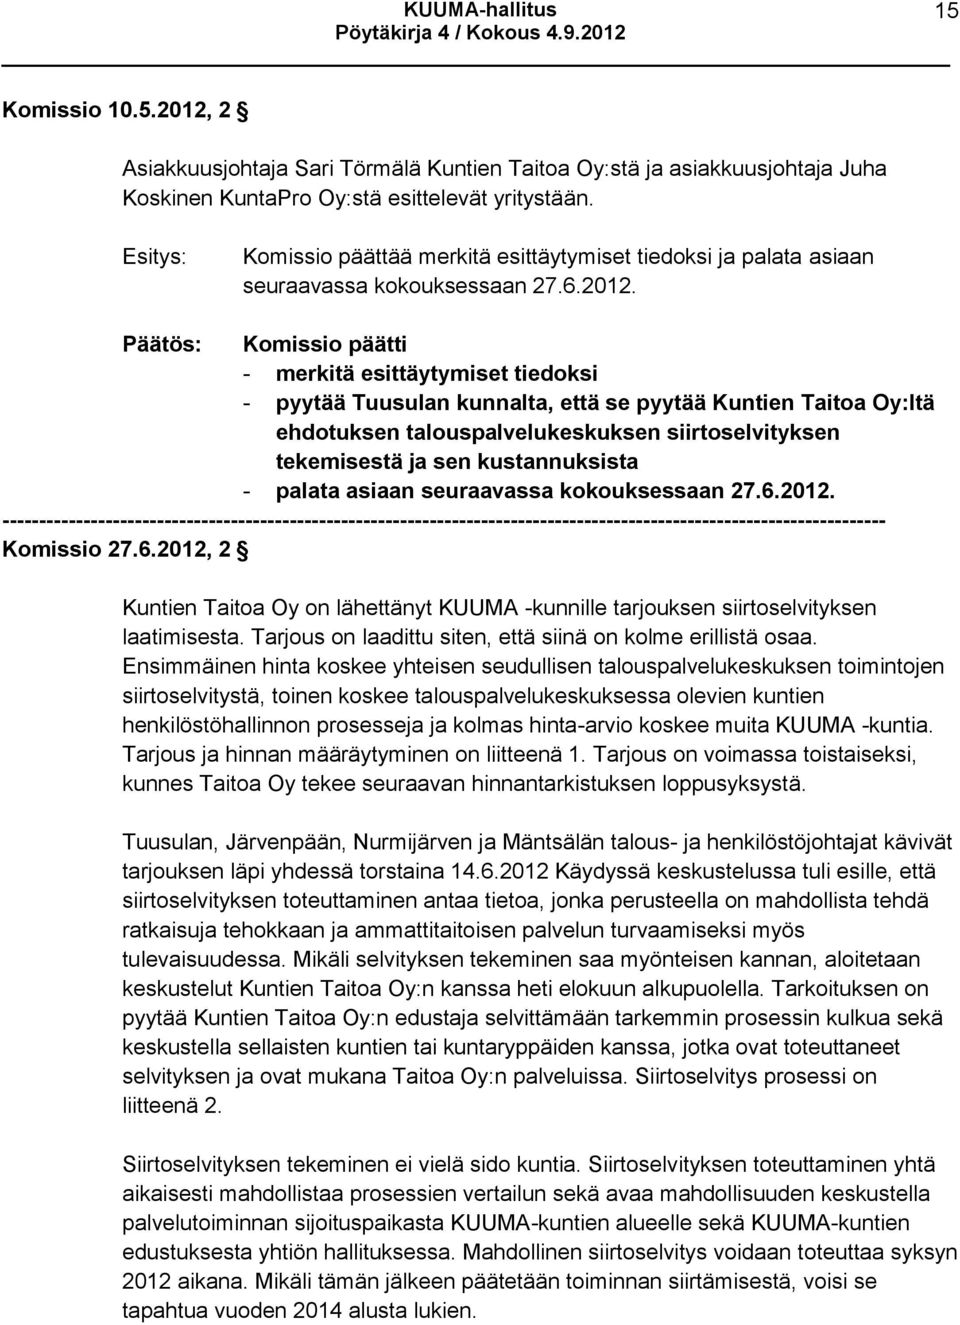 Päätös: Komissio päätti - merkitä esittäytymiset tiedoksi - pyytää Tuusulan kunnalta, että se pyytää Kuntien Taitoa Oy:ltä ehdotuksen talouspalvelukeskuksen siirtoselvityksen tekemisestä ja sen